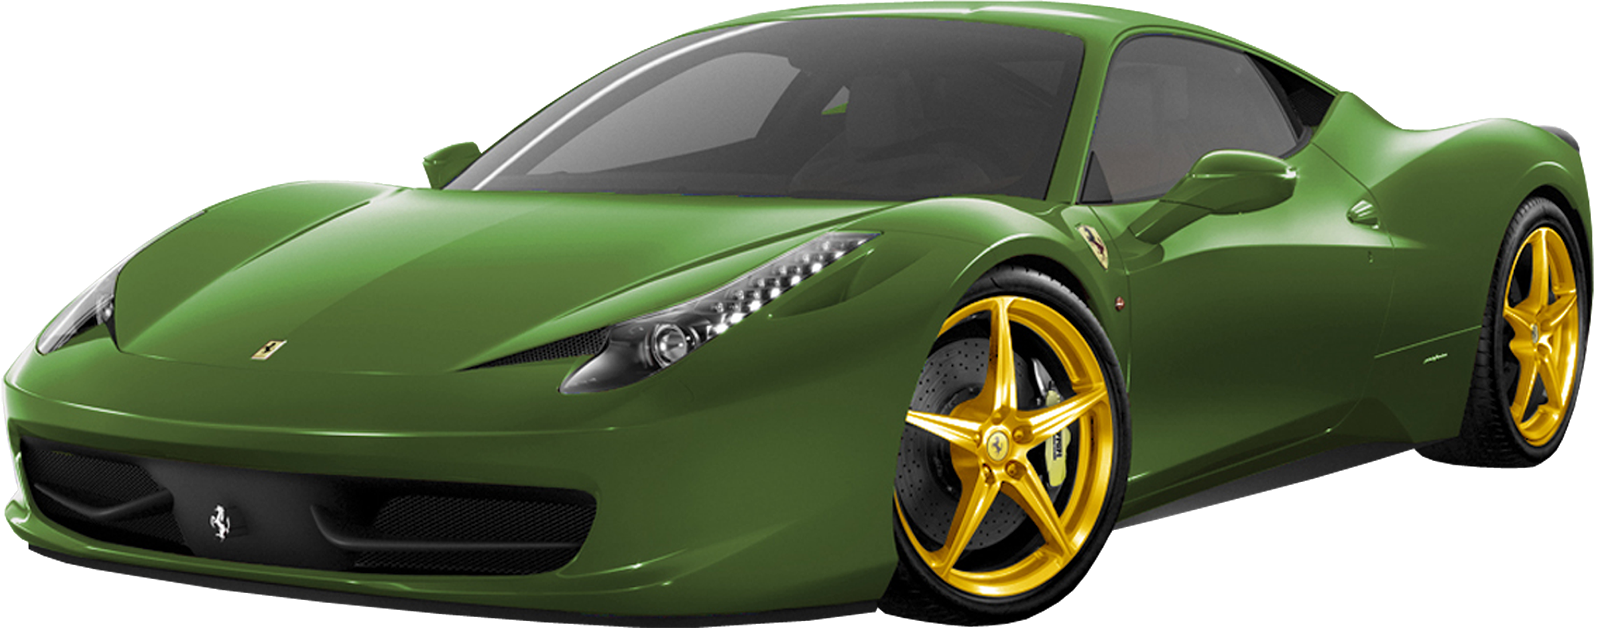 Ferrari verde